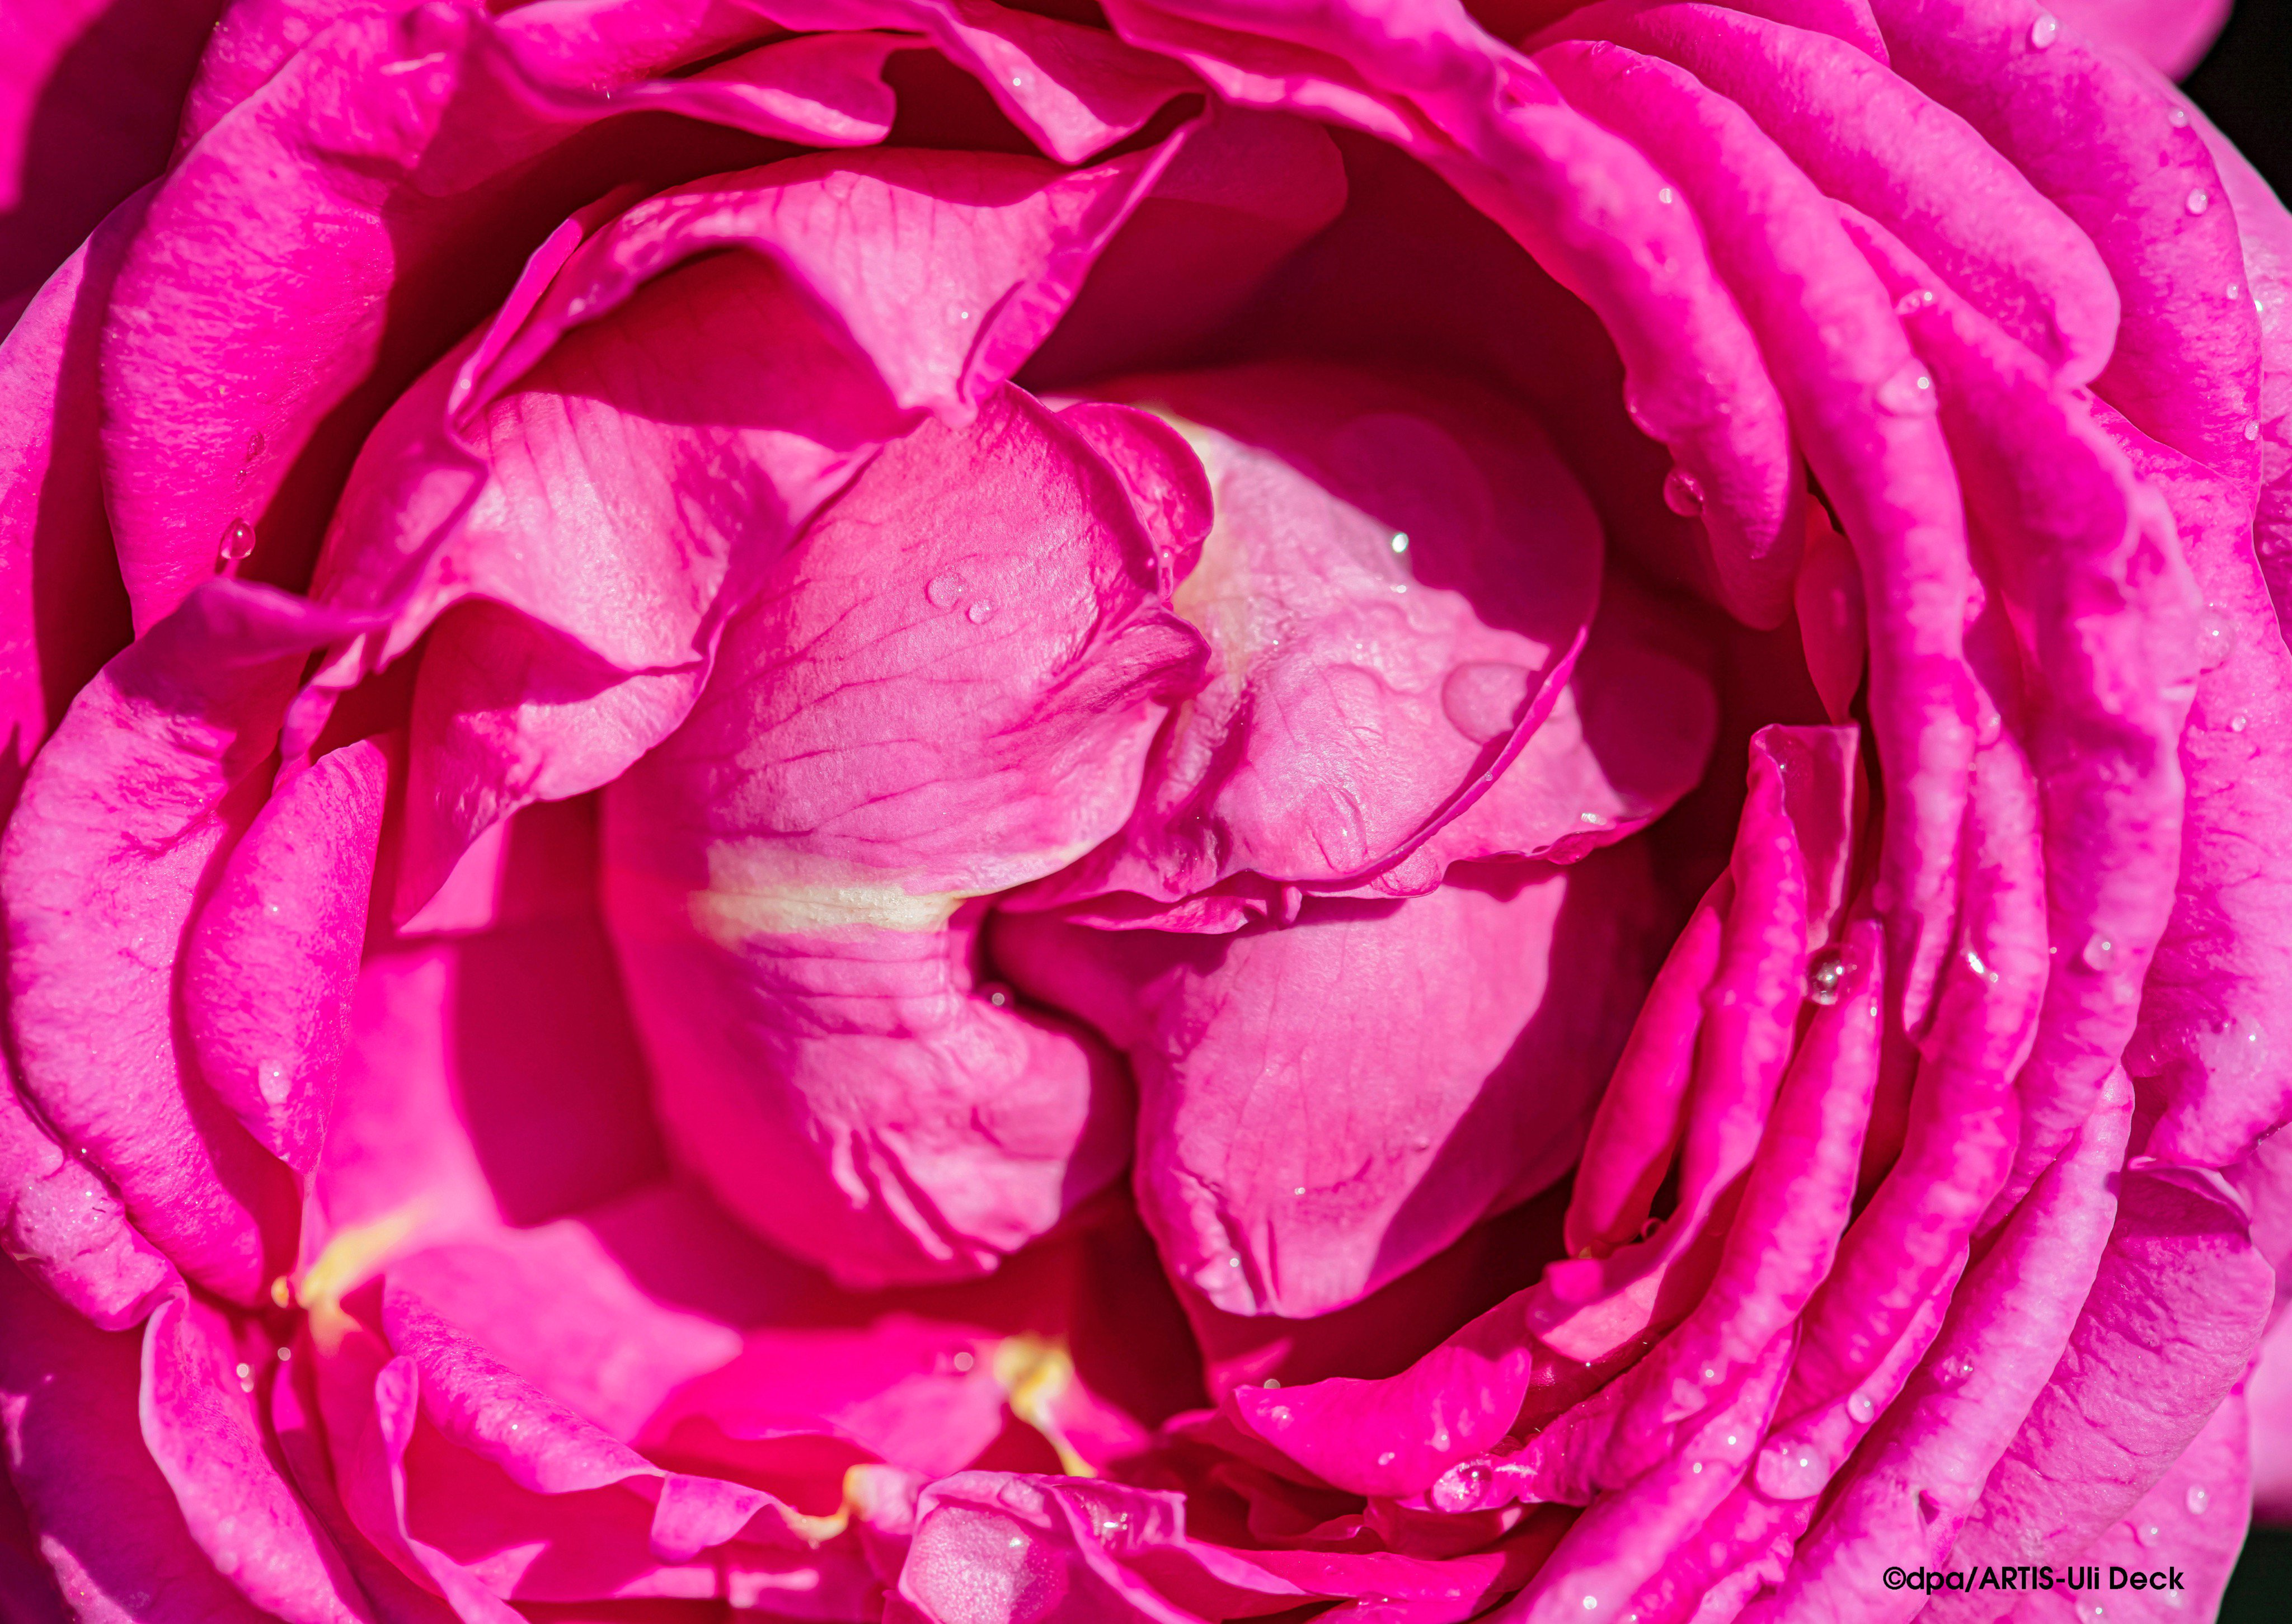 Uli Deck on Twitter: "Die schönste Rose des Jahres 2019 mit dem Namen  Anuschka- Goldene Rose von Baden-Baden, gekürt beim 67. Internationalen  Rosenneuheitenwettbewerb in der Kurstadt. Foto: ©dpa/ARTIS-Uli Deck #rosen#tantau#liebe#duft#rosenkavalier  ...